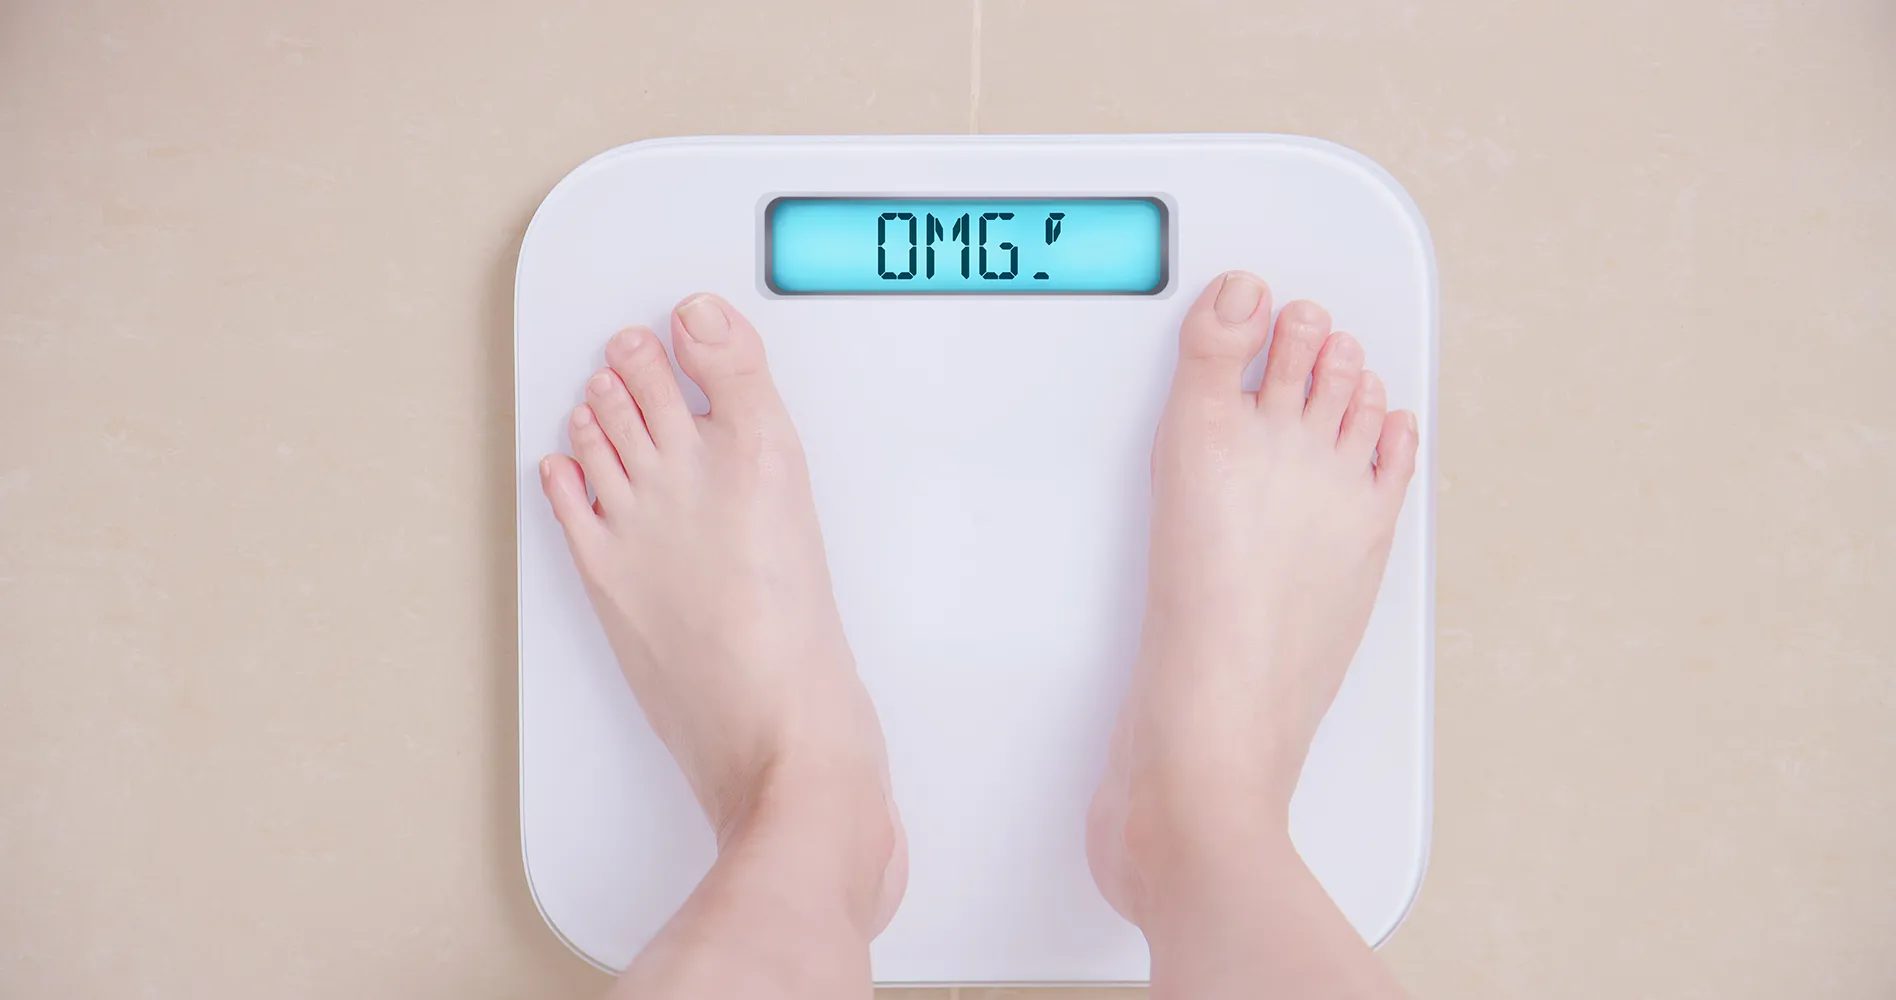 체중계 체중 OMG으로 표현되어 체중 감량을 컨셉으로 한 사진